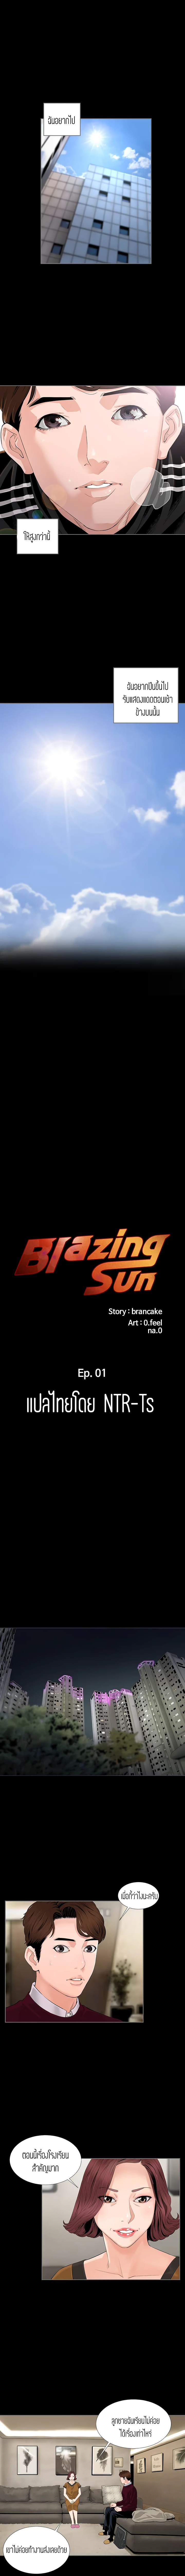 Blazing Sun 1 02